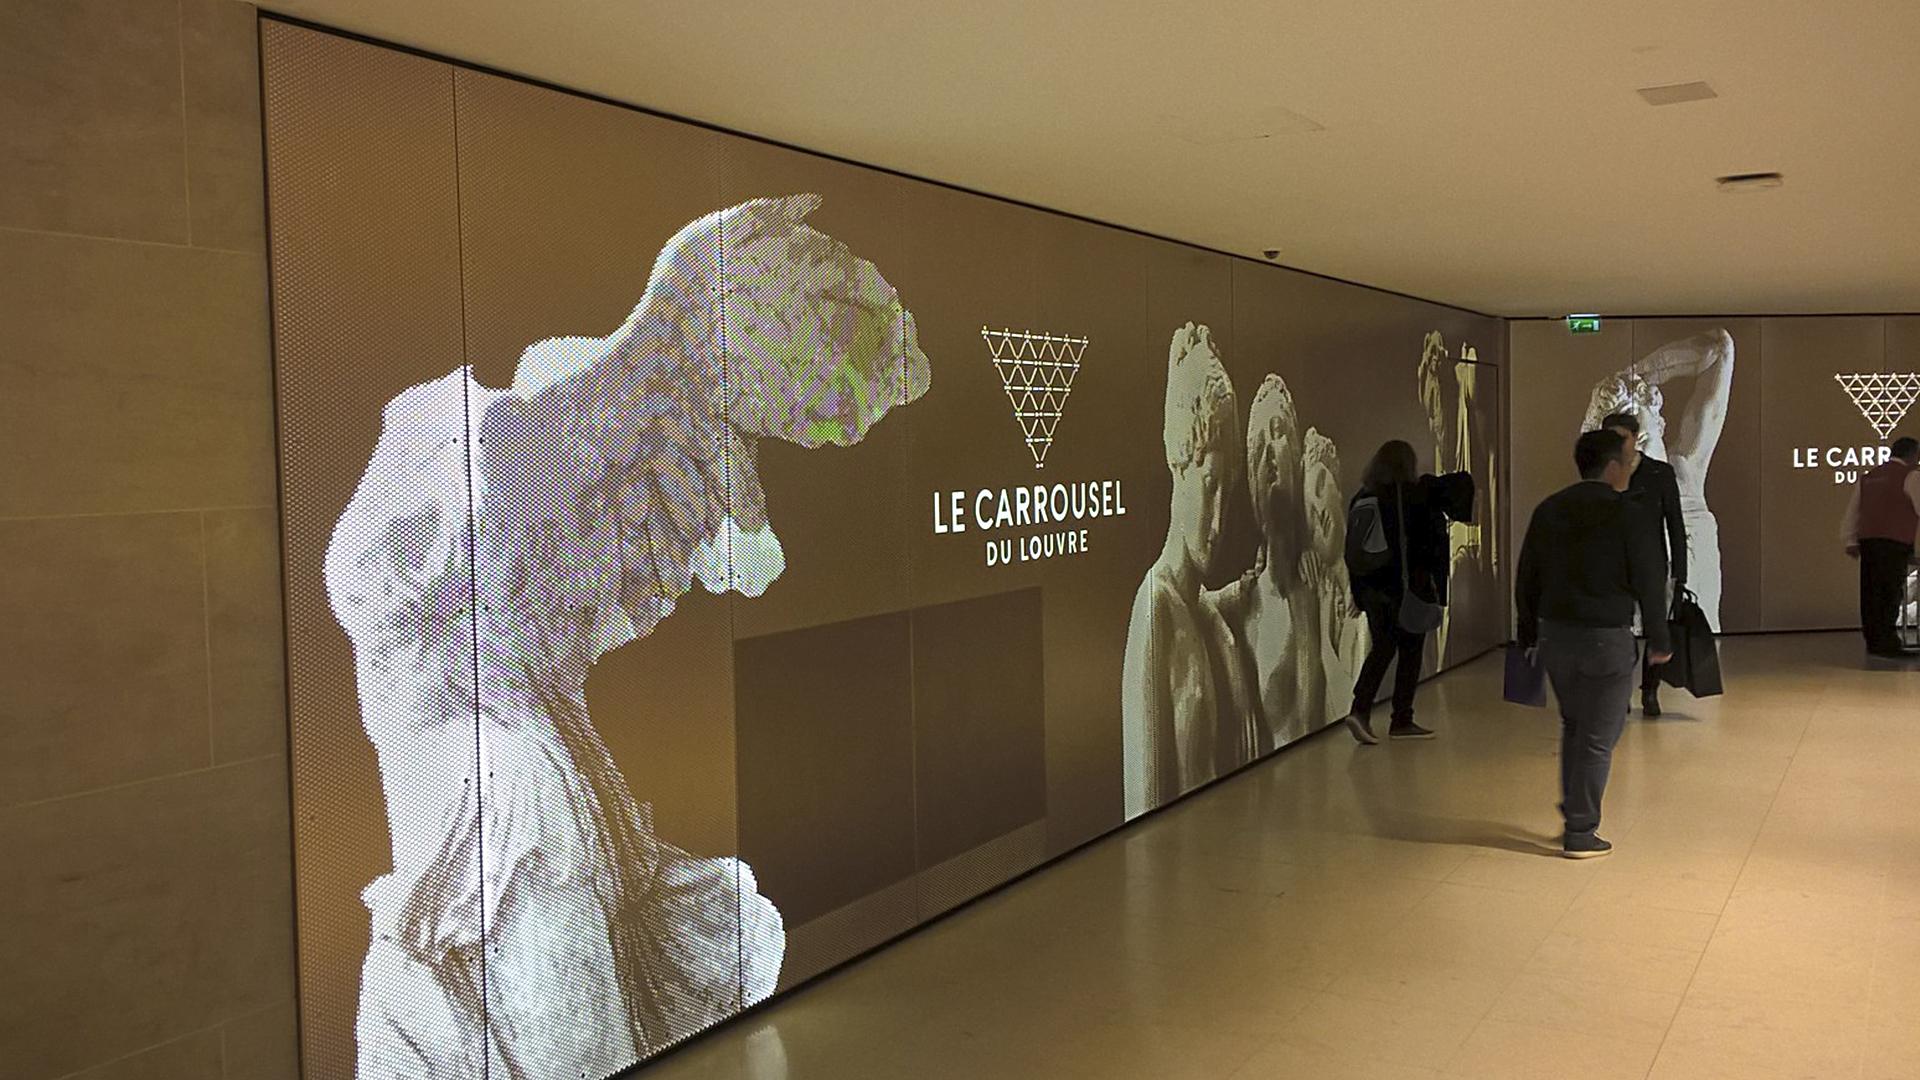 Gran montaje luminario a medida para el Carroussel del Louvre de París por Visotec